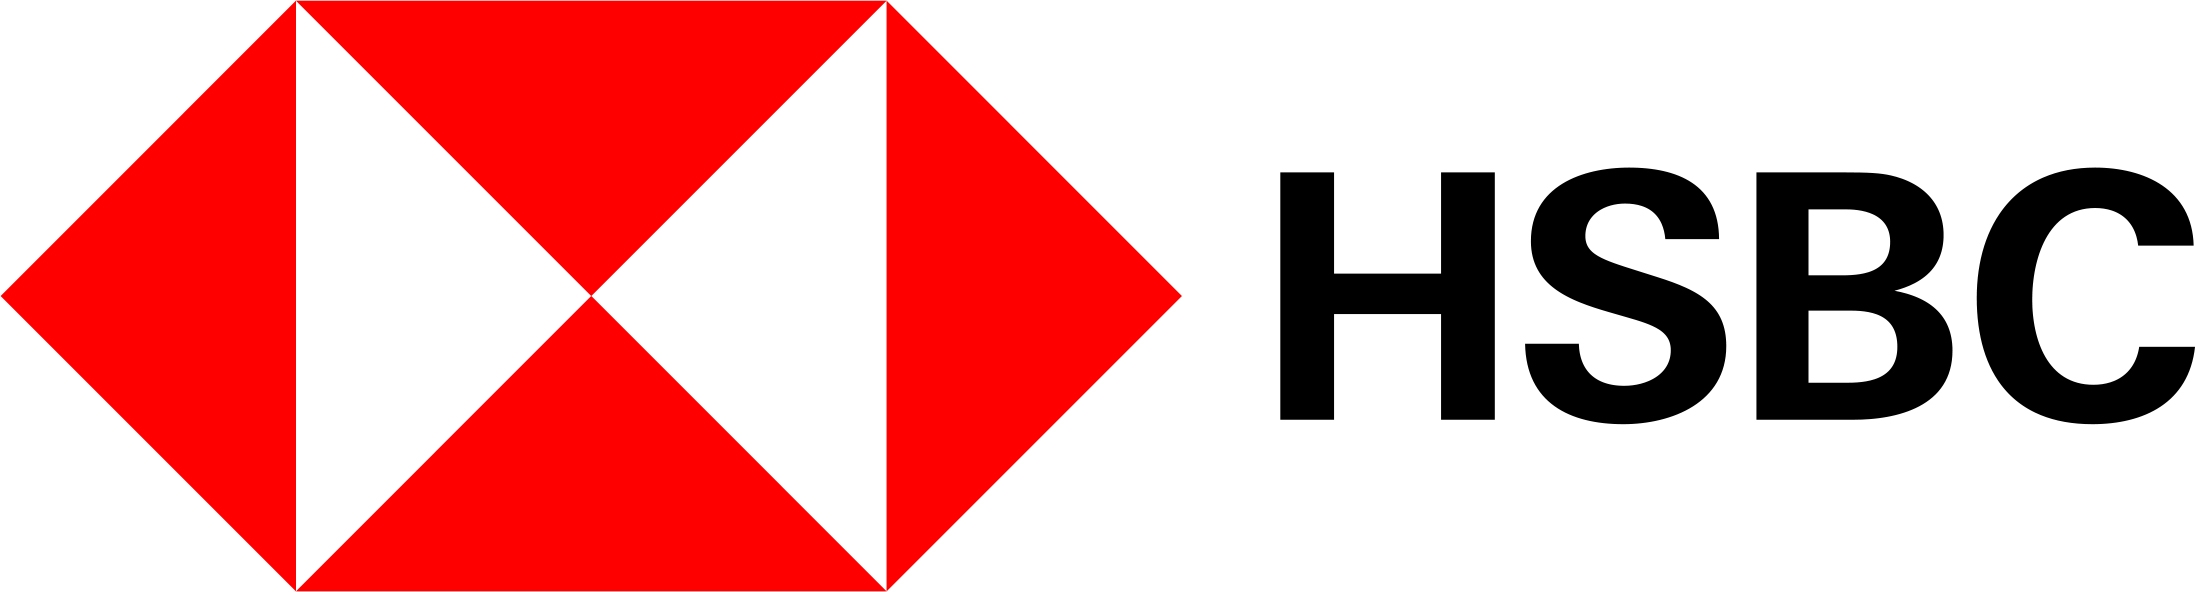 Public Photos / Files - HSBC Logo